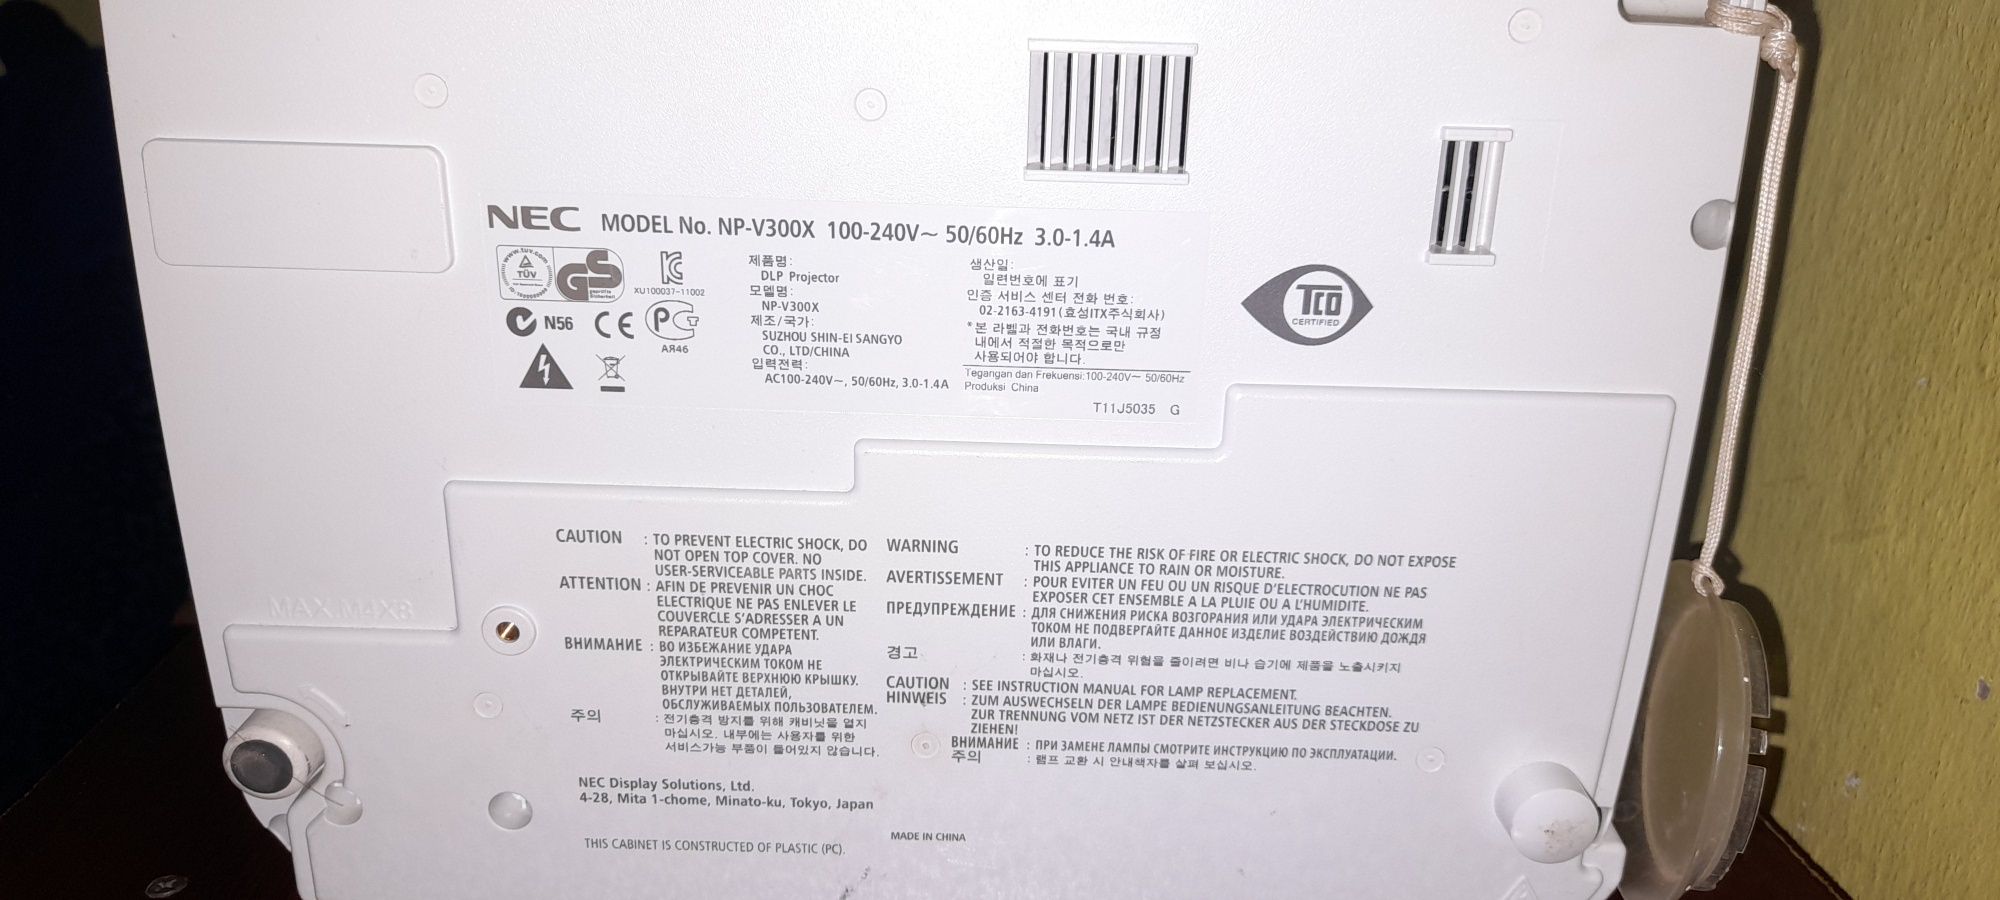 Проектор NEC V300X сотилади .